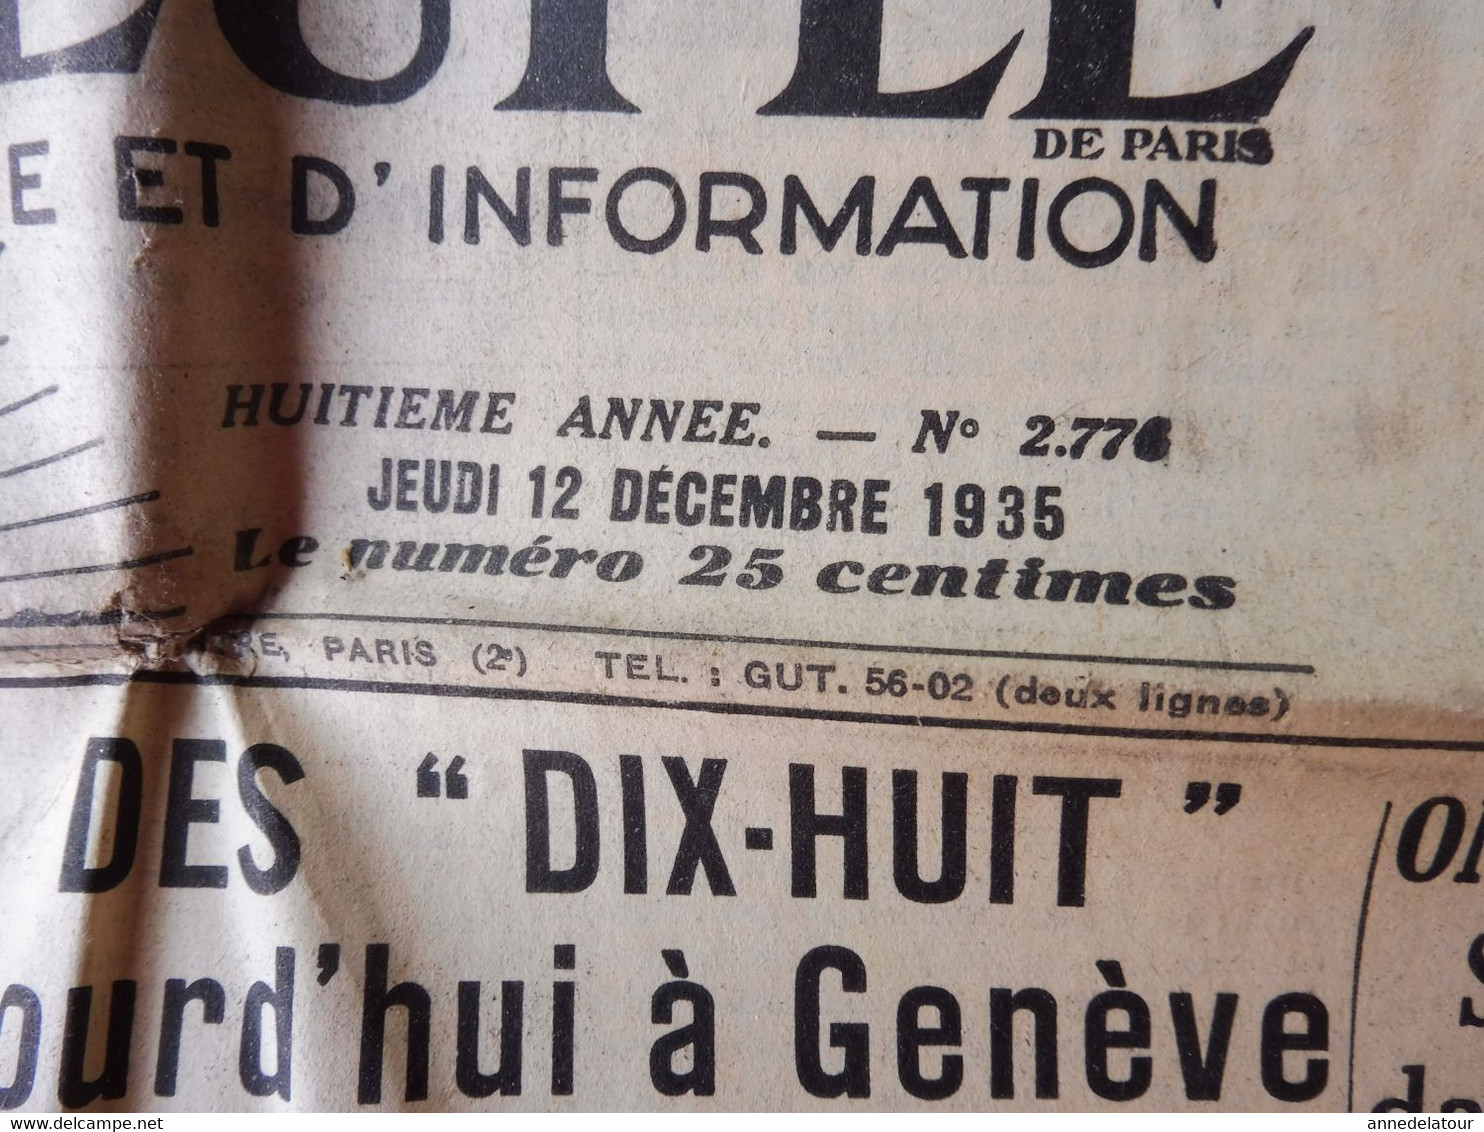 1935 L'AMI DU PEUPLE:Régime Et Hygiène Du Foie ;Terrible Accident D'avion à Croydon ;Guérir Par Sympathicothérapie ; Etc - General Issues